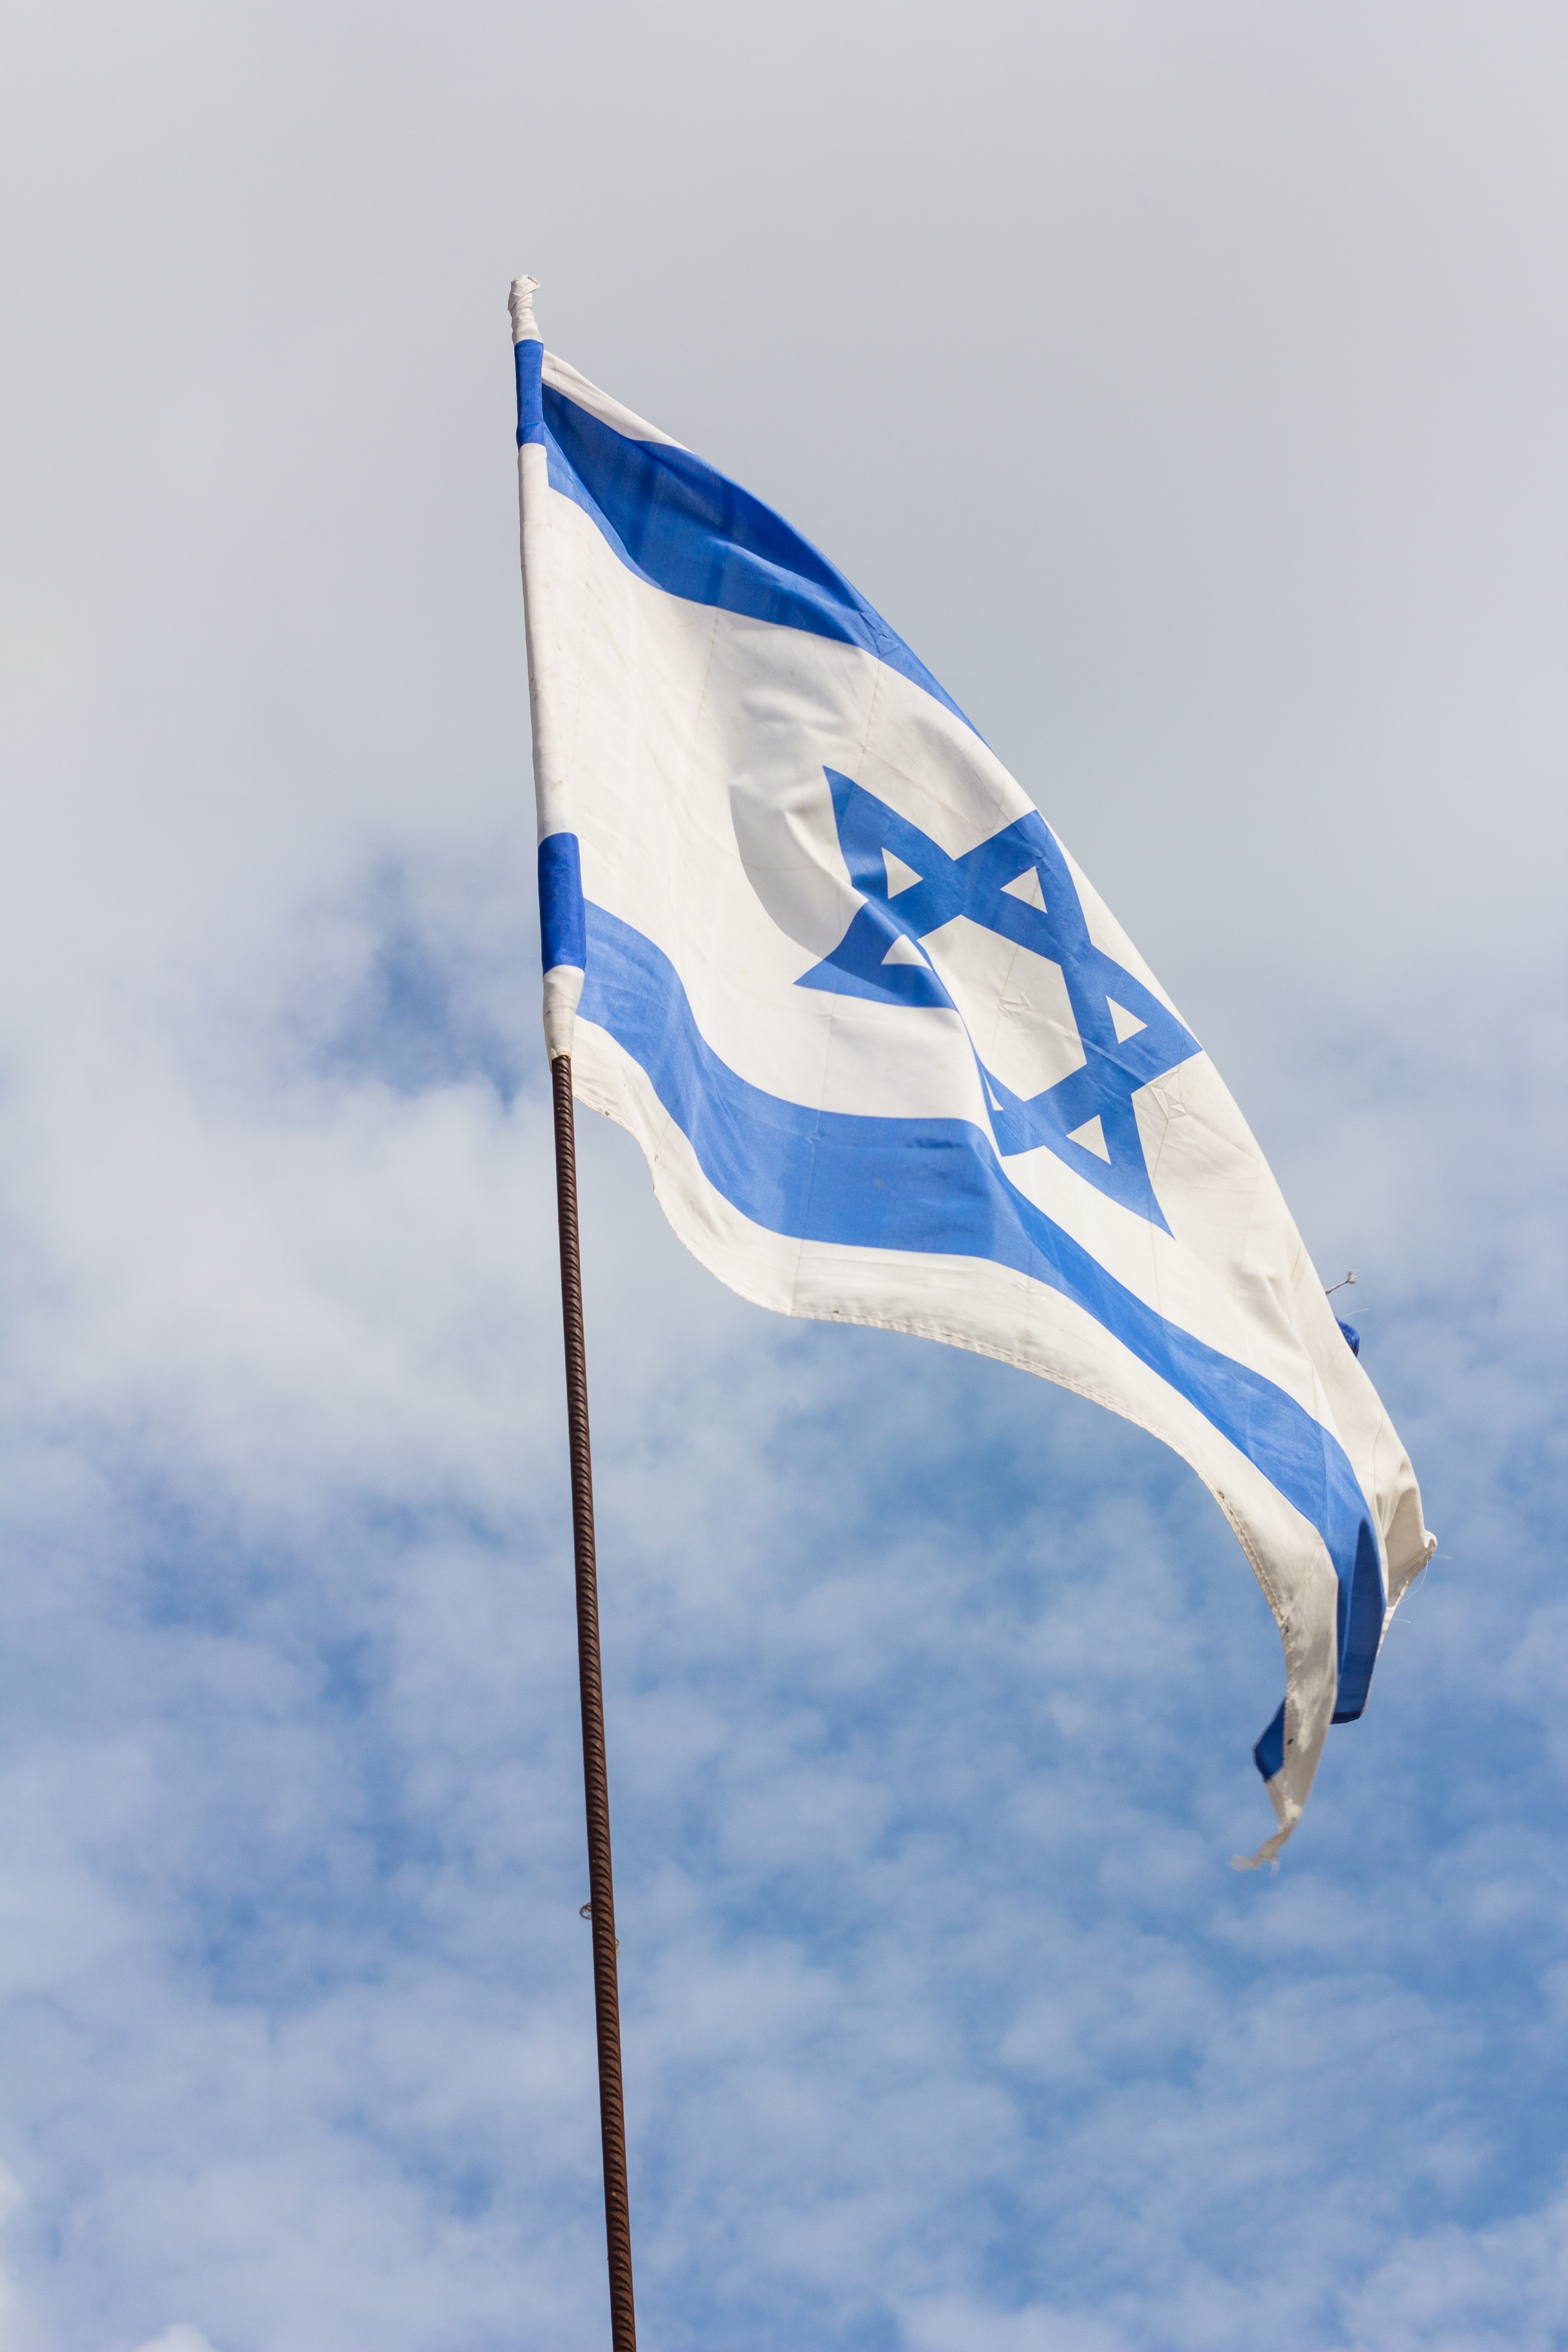 Israel 75 years